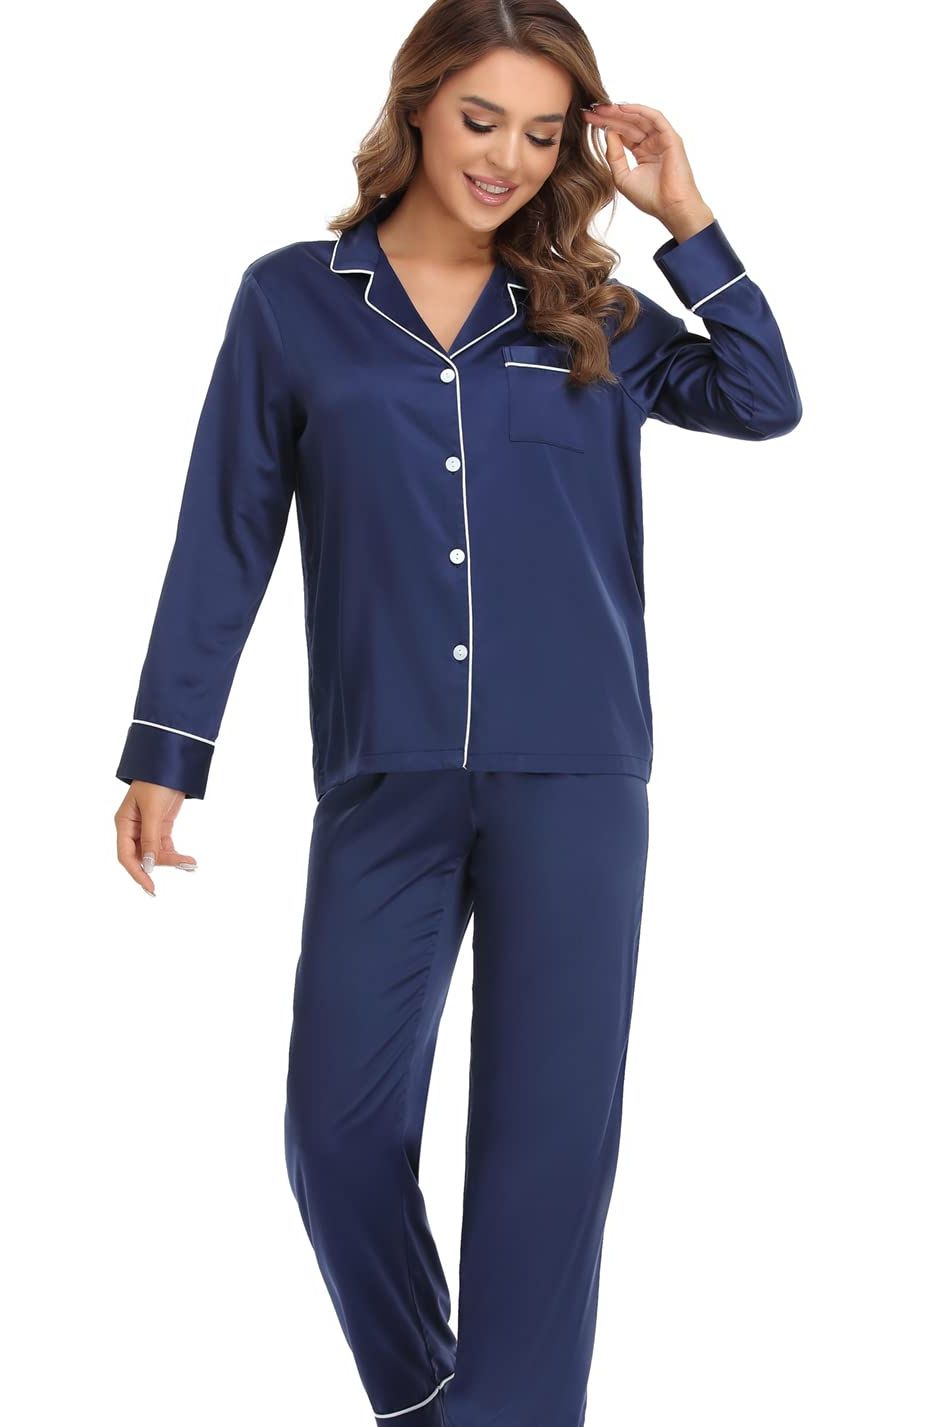 Aadaraya Pajamas  The Softest, Most Comfortable Sleepwear You'll